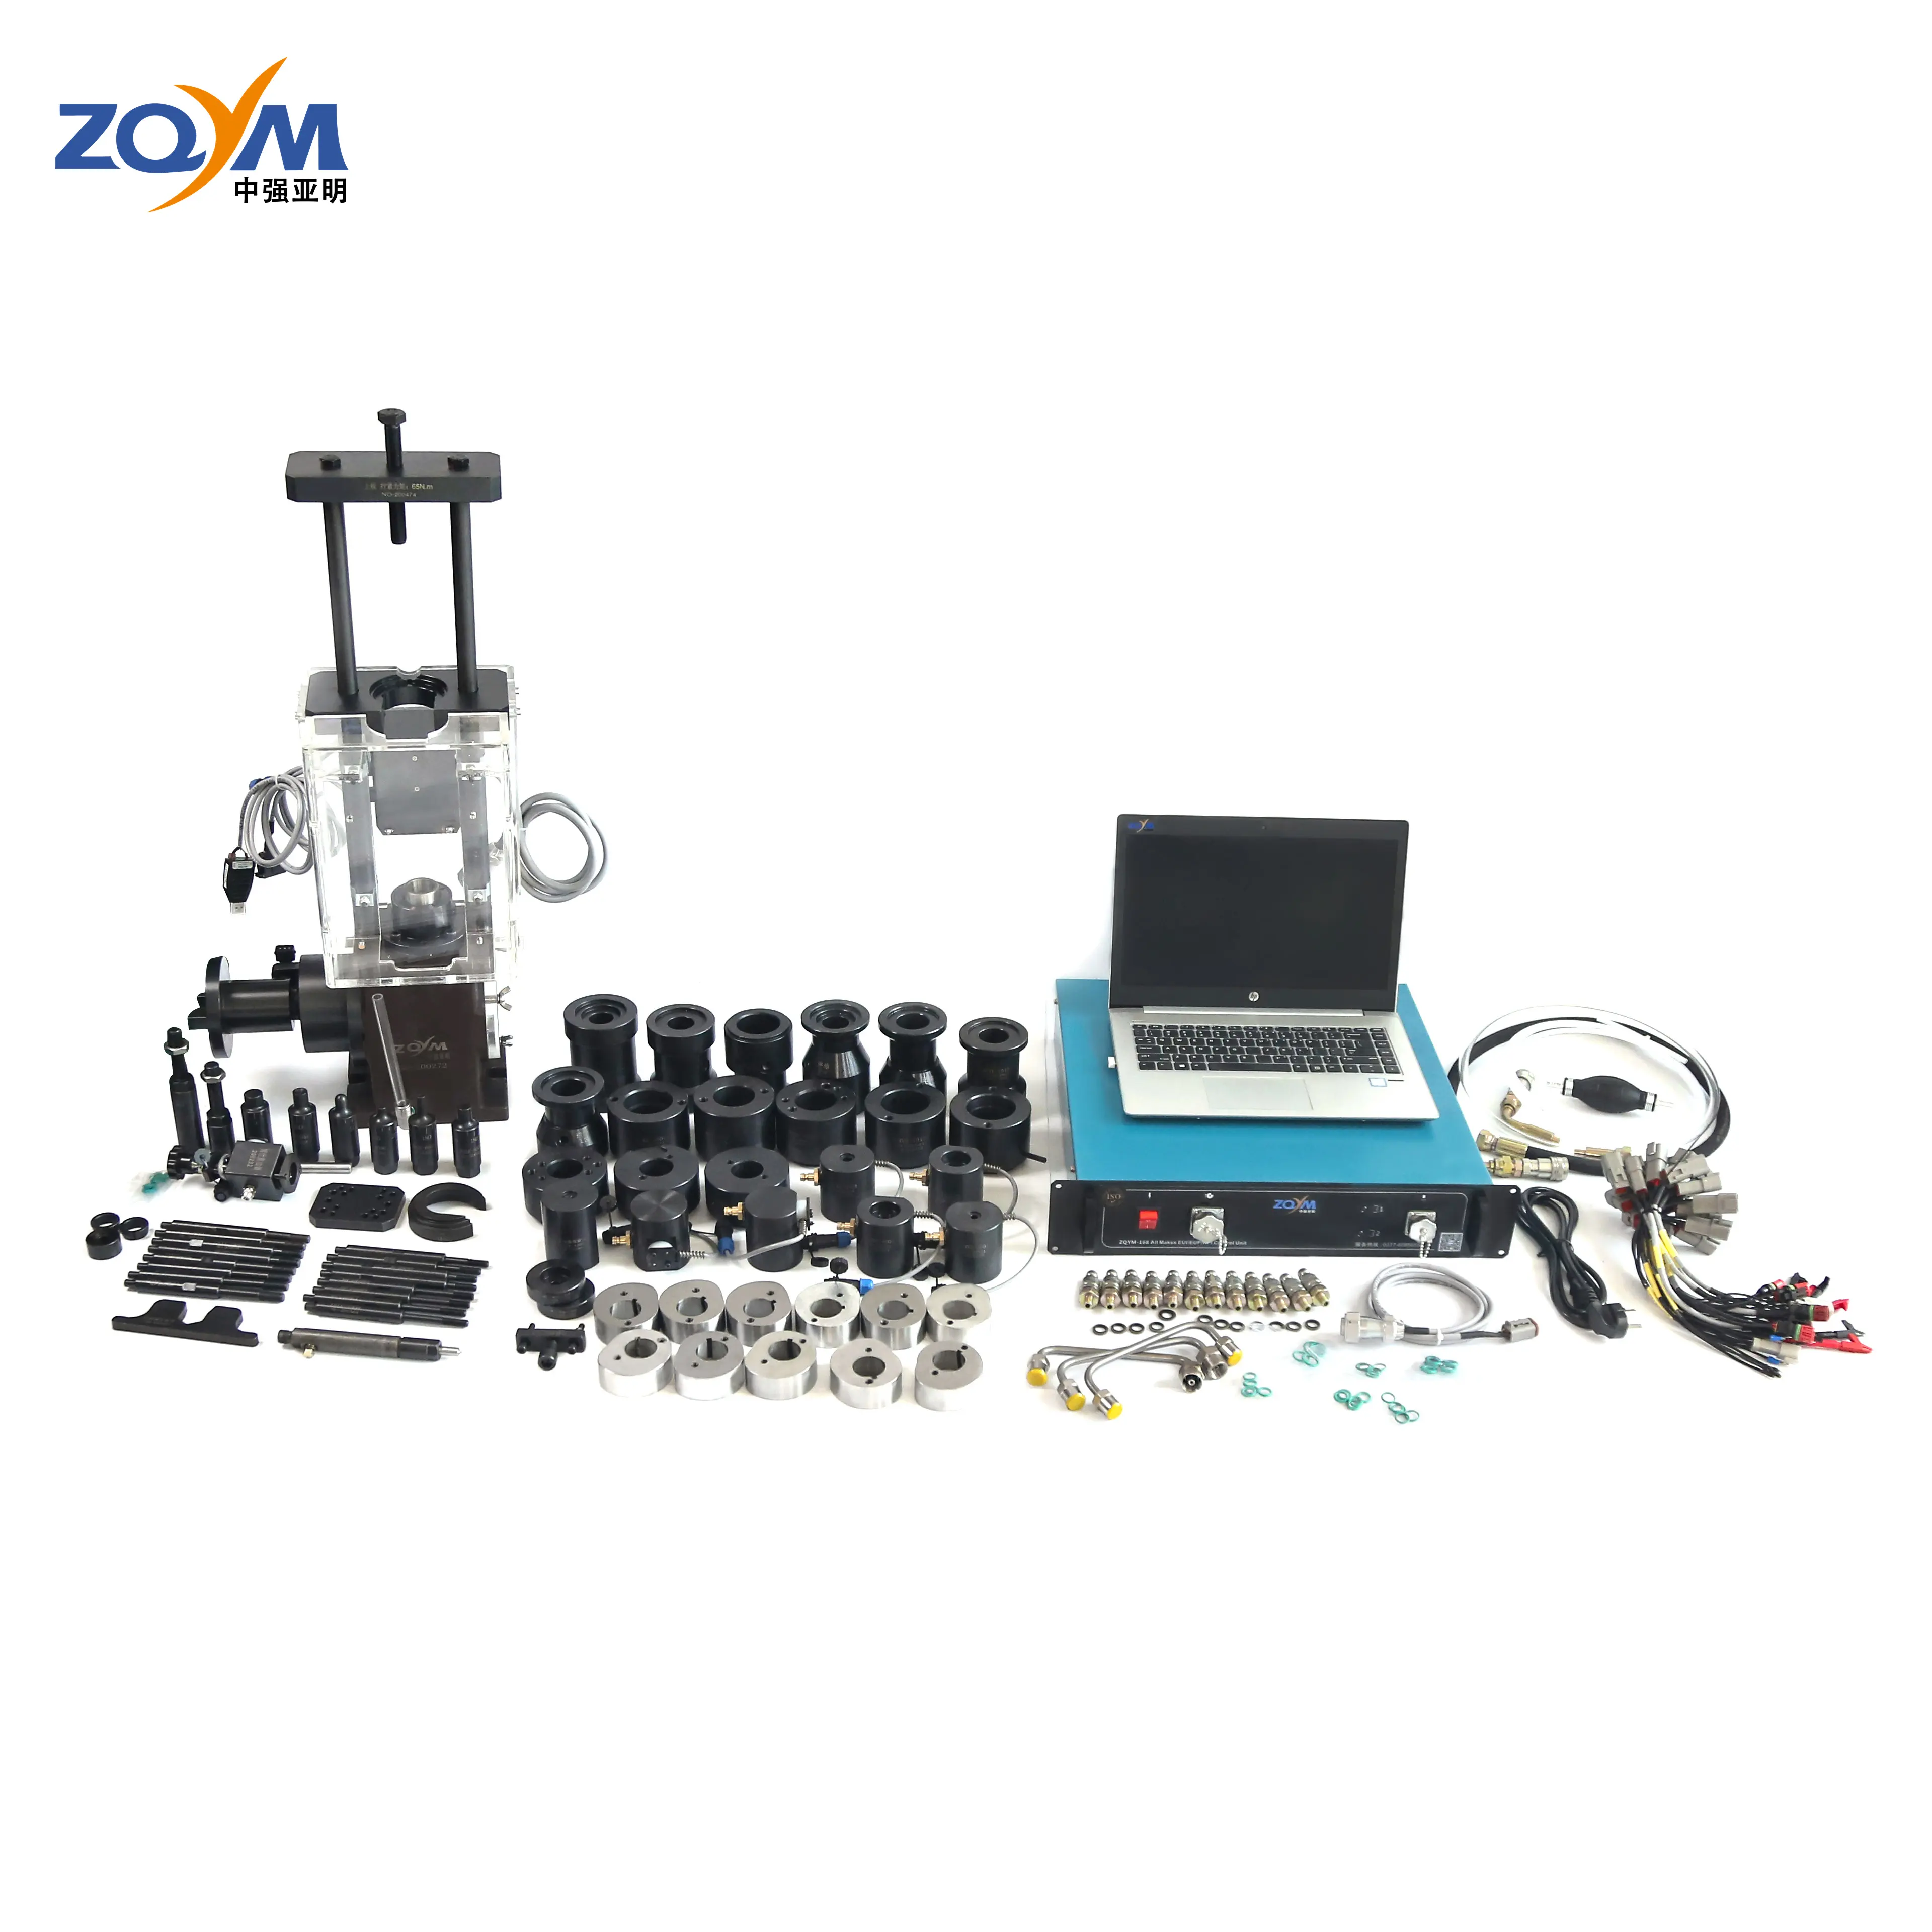 Fabriek Direct Zqym Cambox Eui/Eup Tester 1400 Eui Eup Test Kits Eup Cam Doos Met Adopters